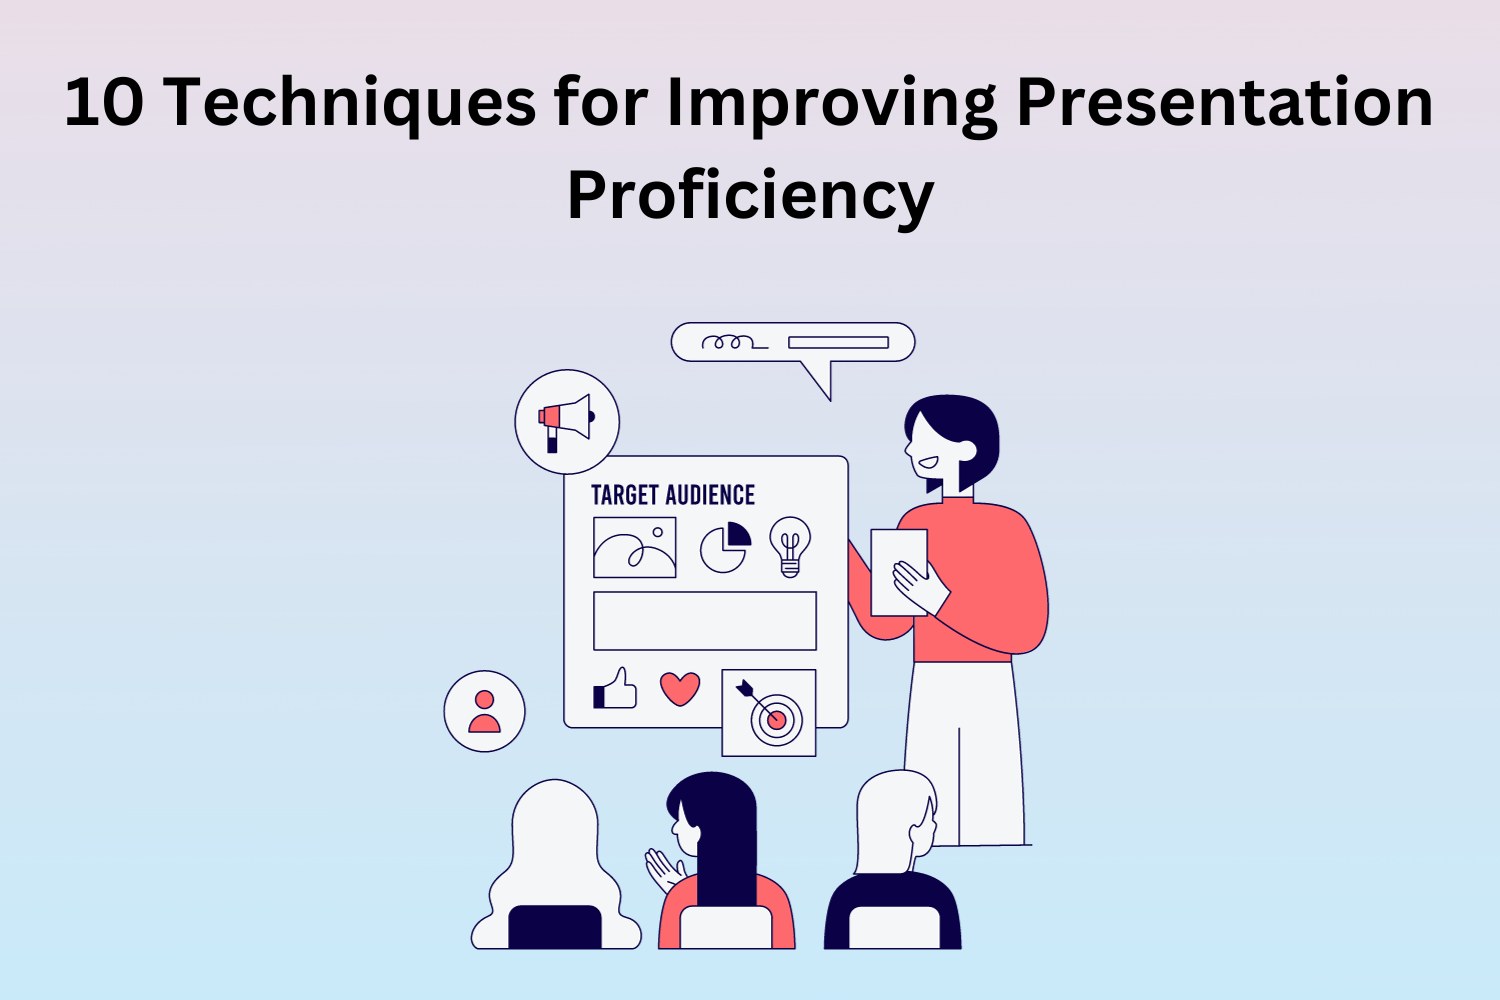 Presentation Proficiency